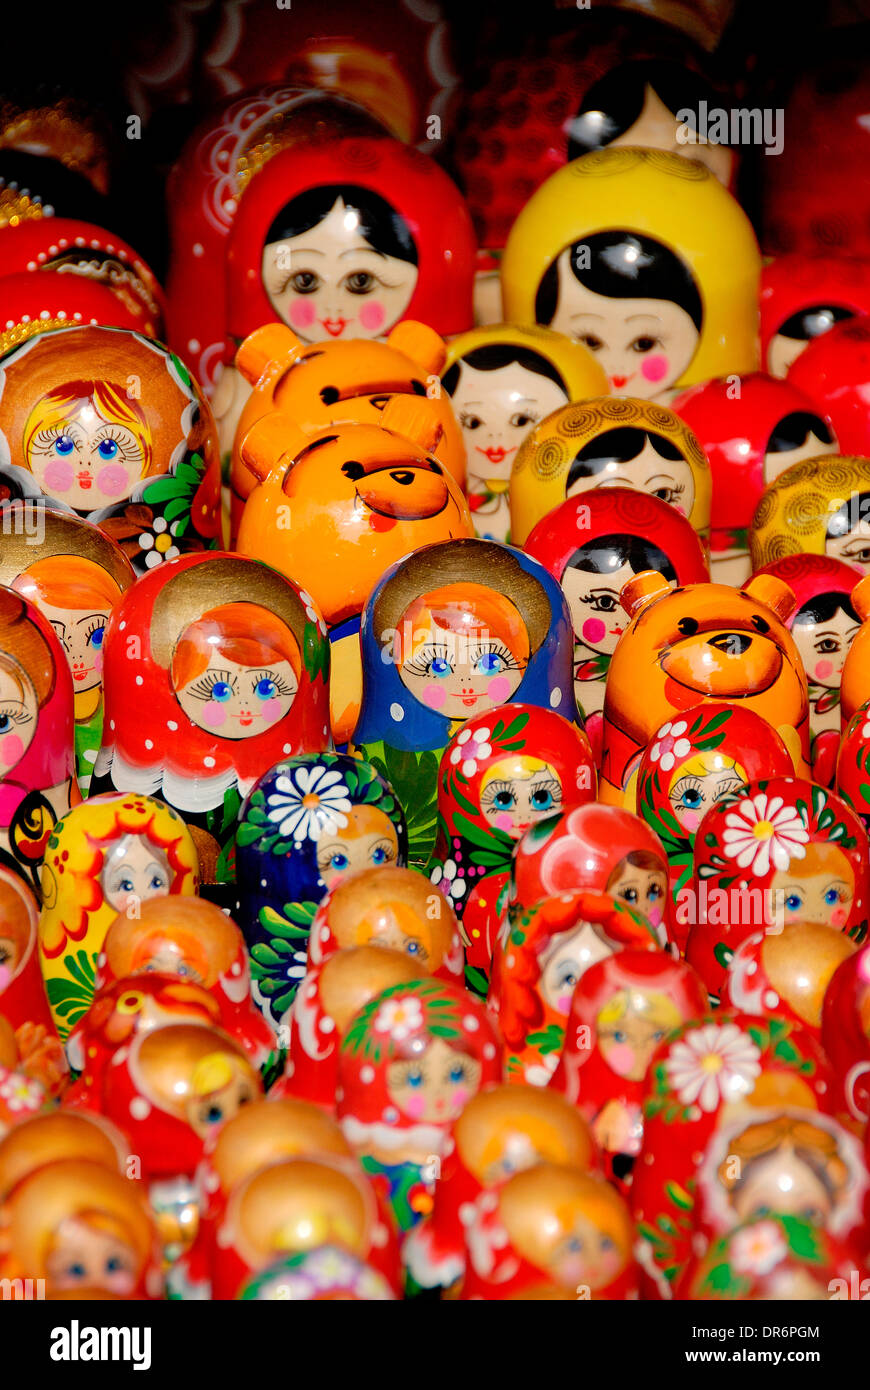 Matryoshka dolls Stock Photo